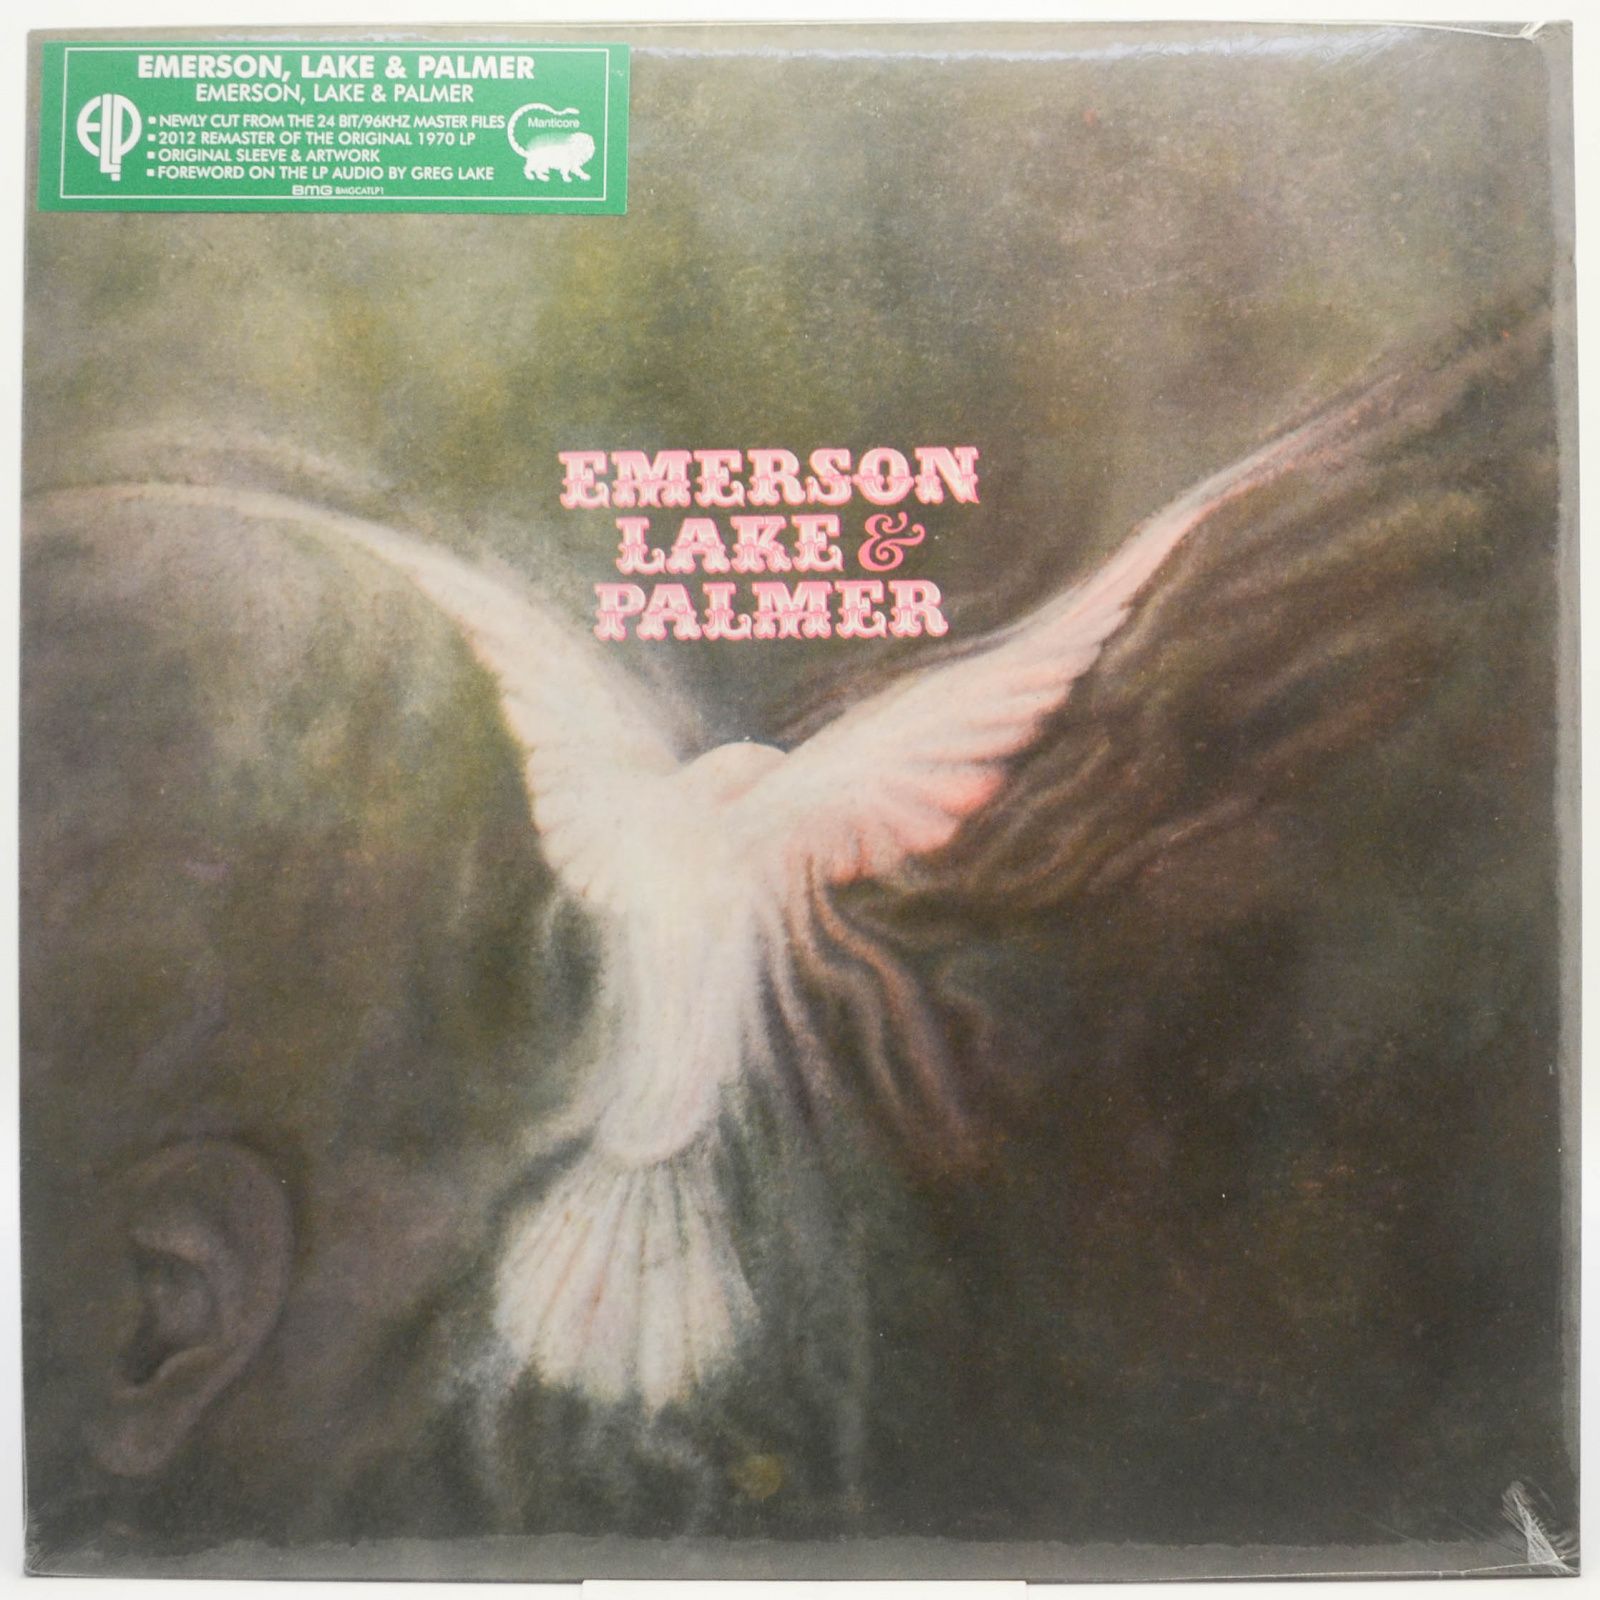 Emerson, Lake & Palmer — Emerson, Lake & Palmer, 2016